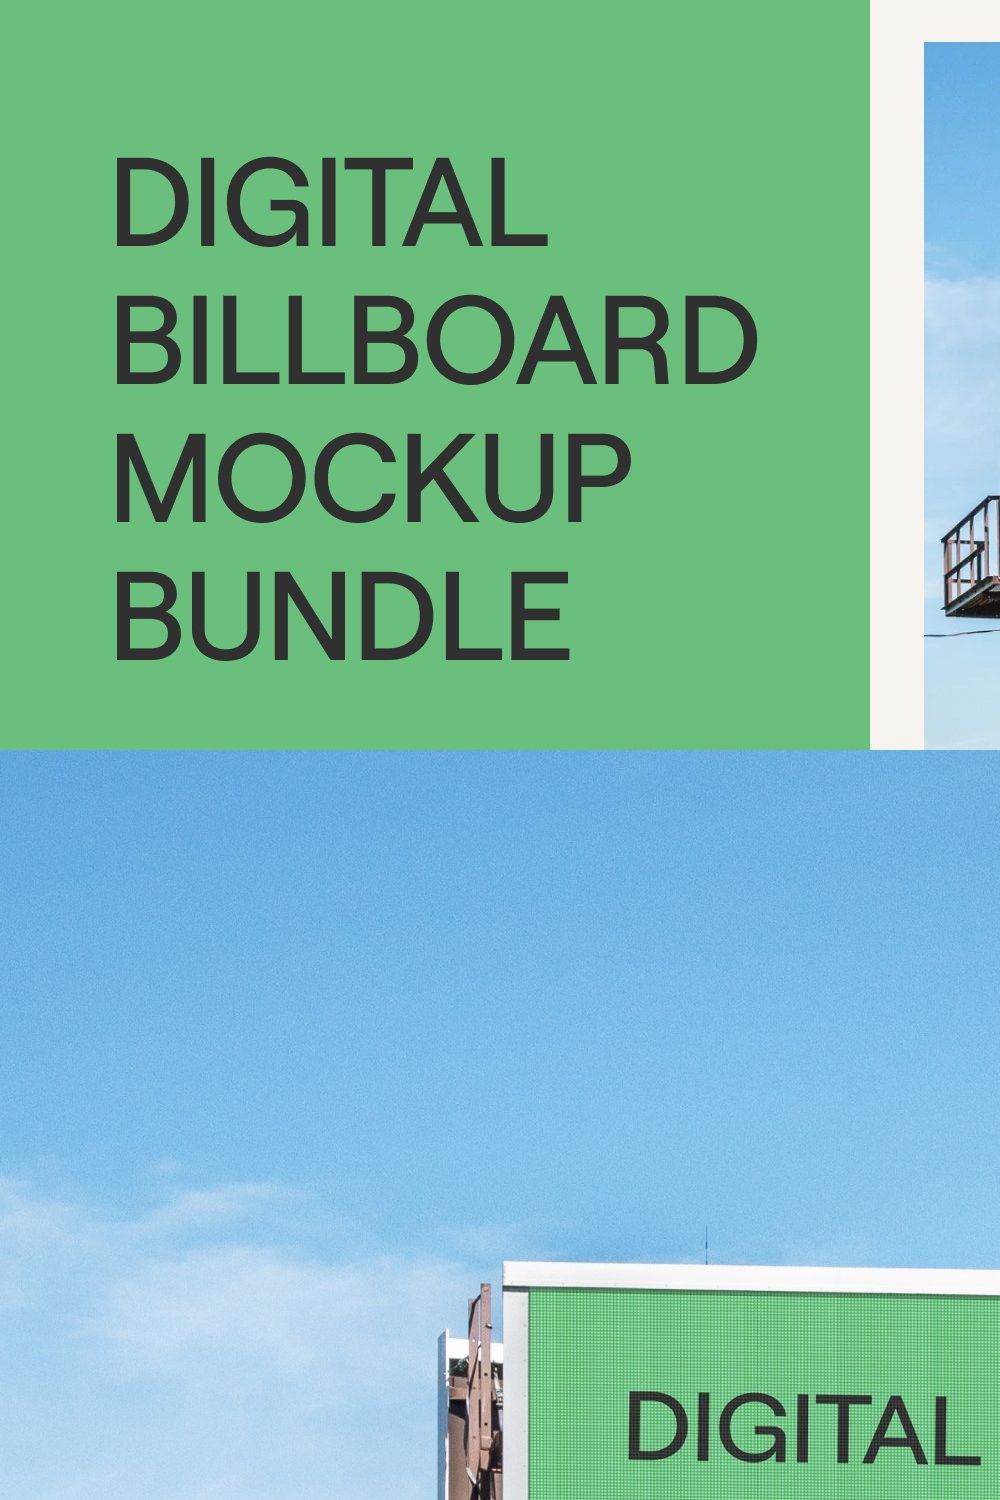 Digital Billboard Mockup PSD Bundle pinterest preview image.